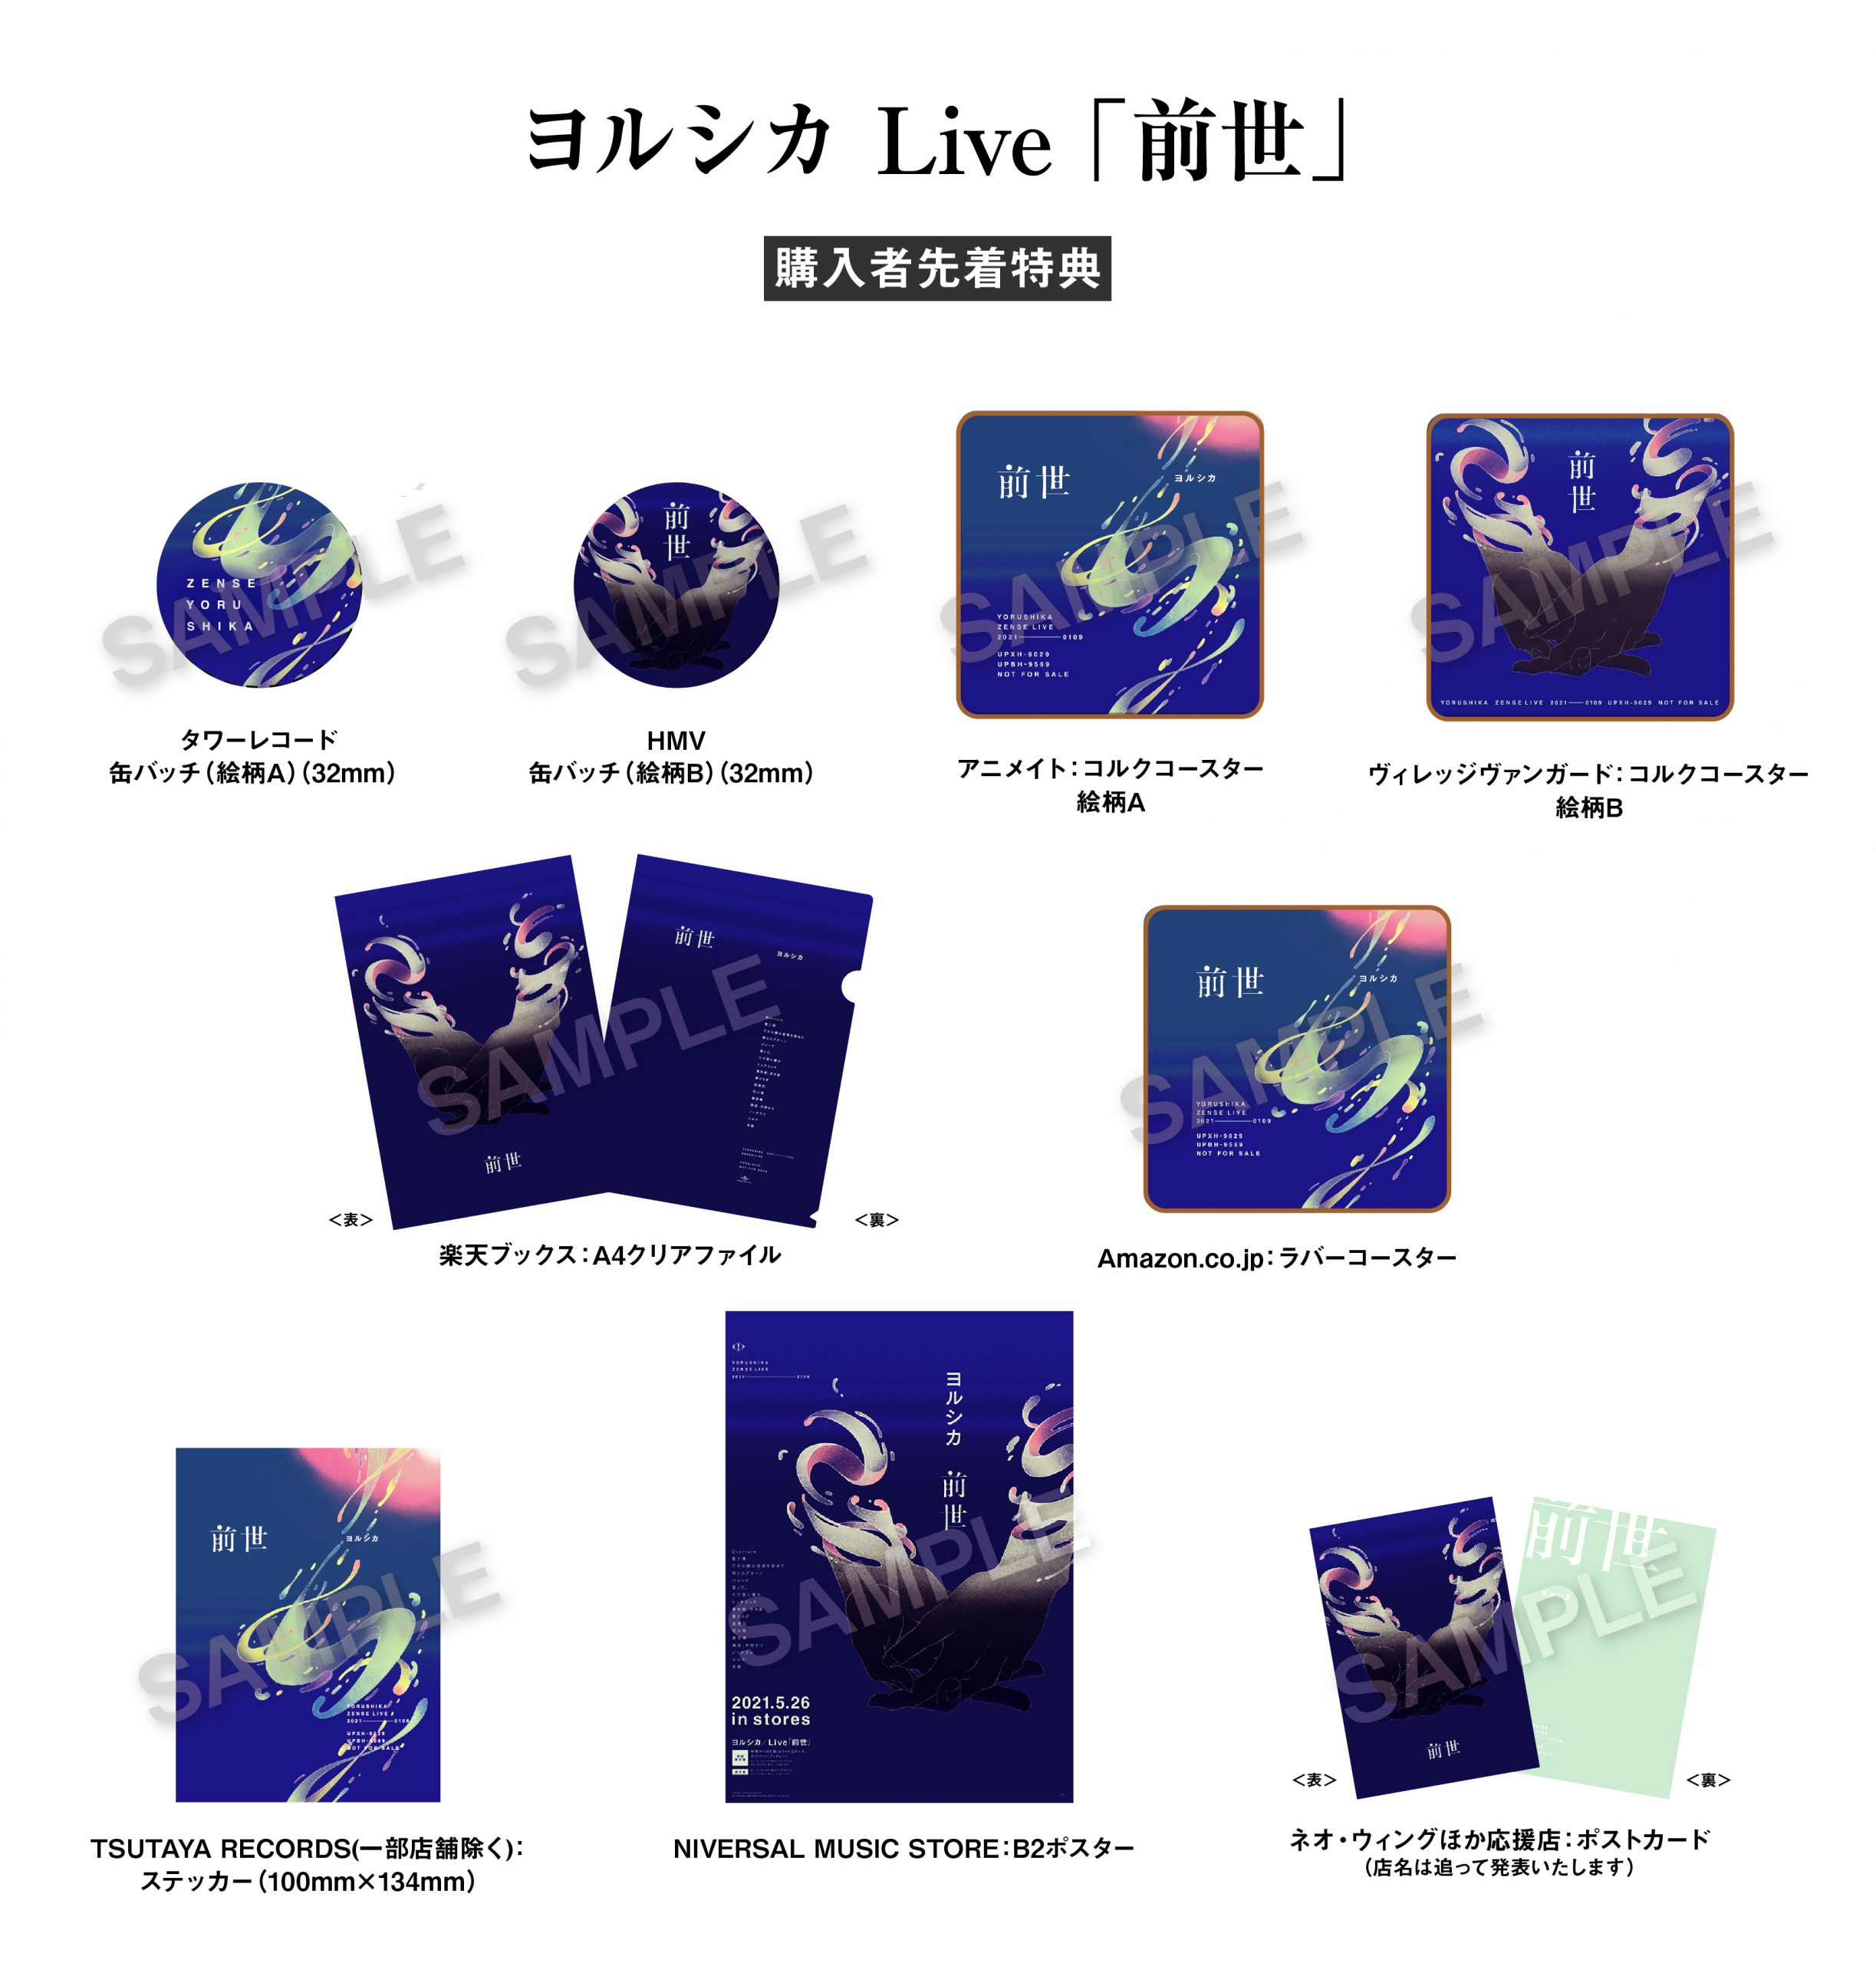 5月26日発売 映像商品『ヨルシカ Live「前世」』CDショップ特典のご